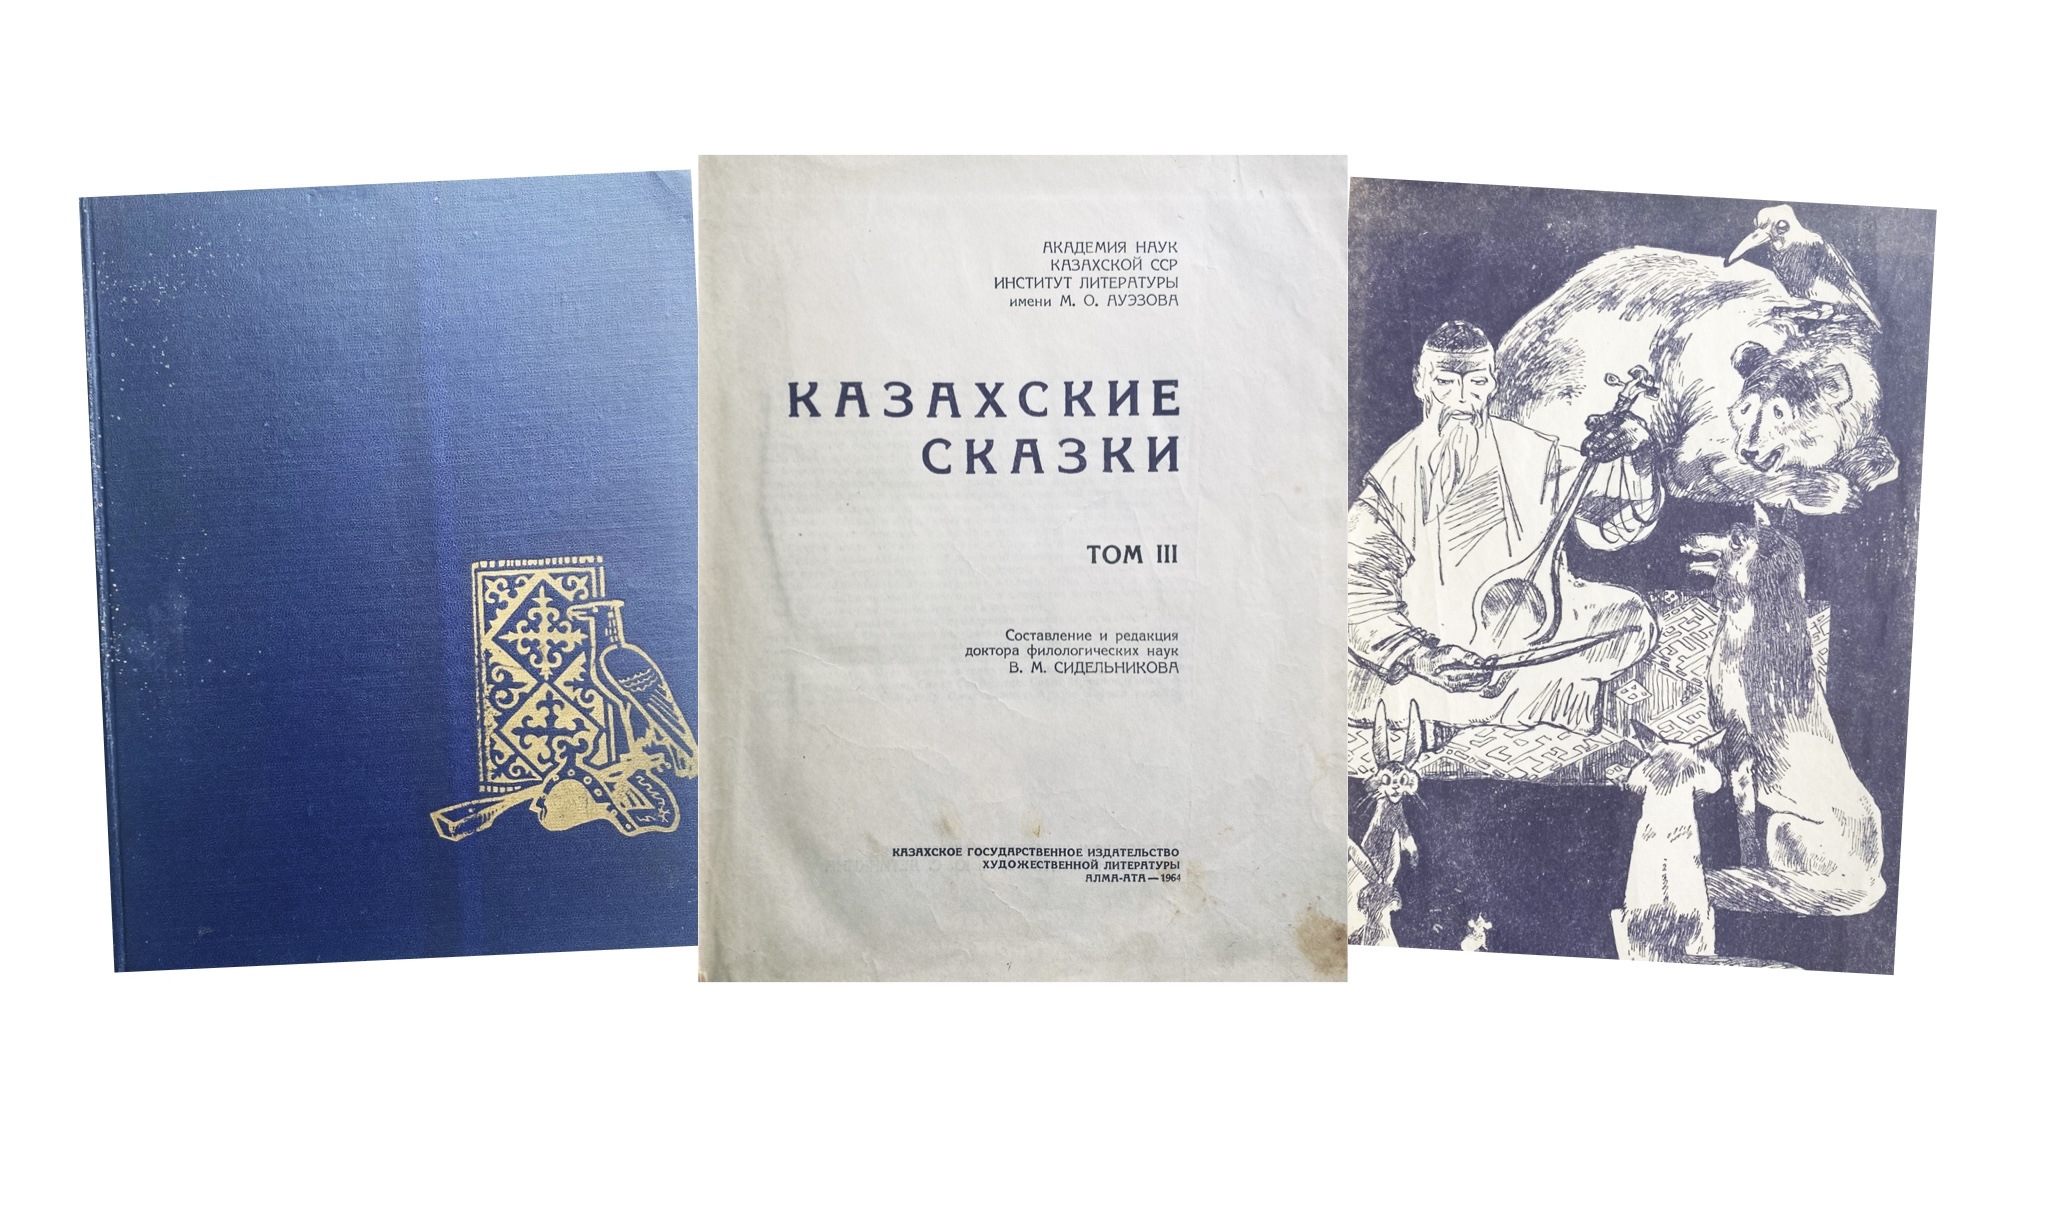 Купить книгу В.М. Сидельникова (Казахские сказки)